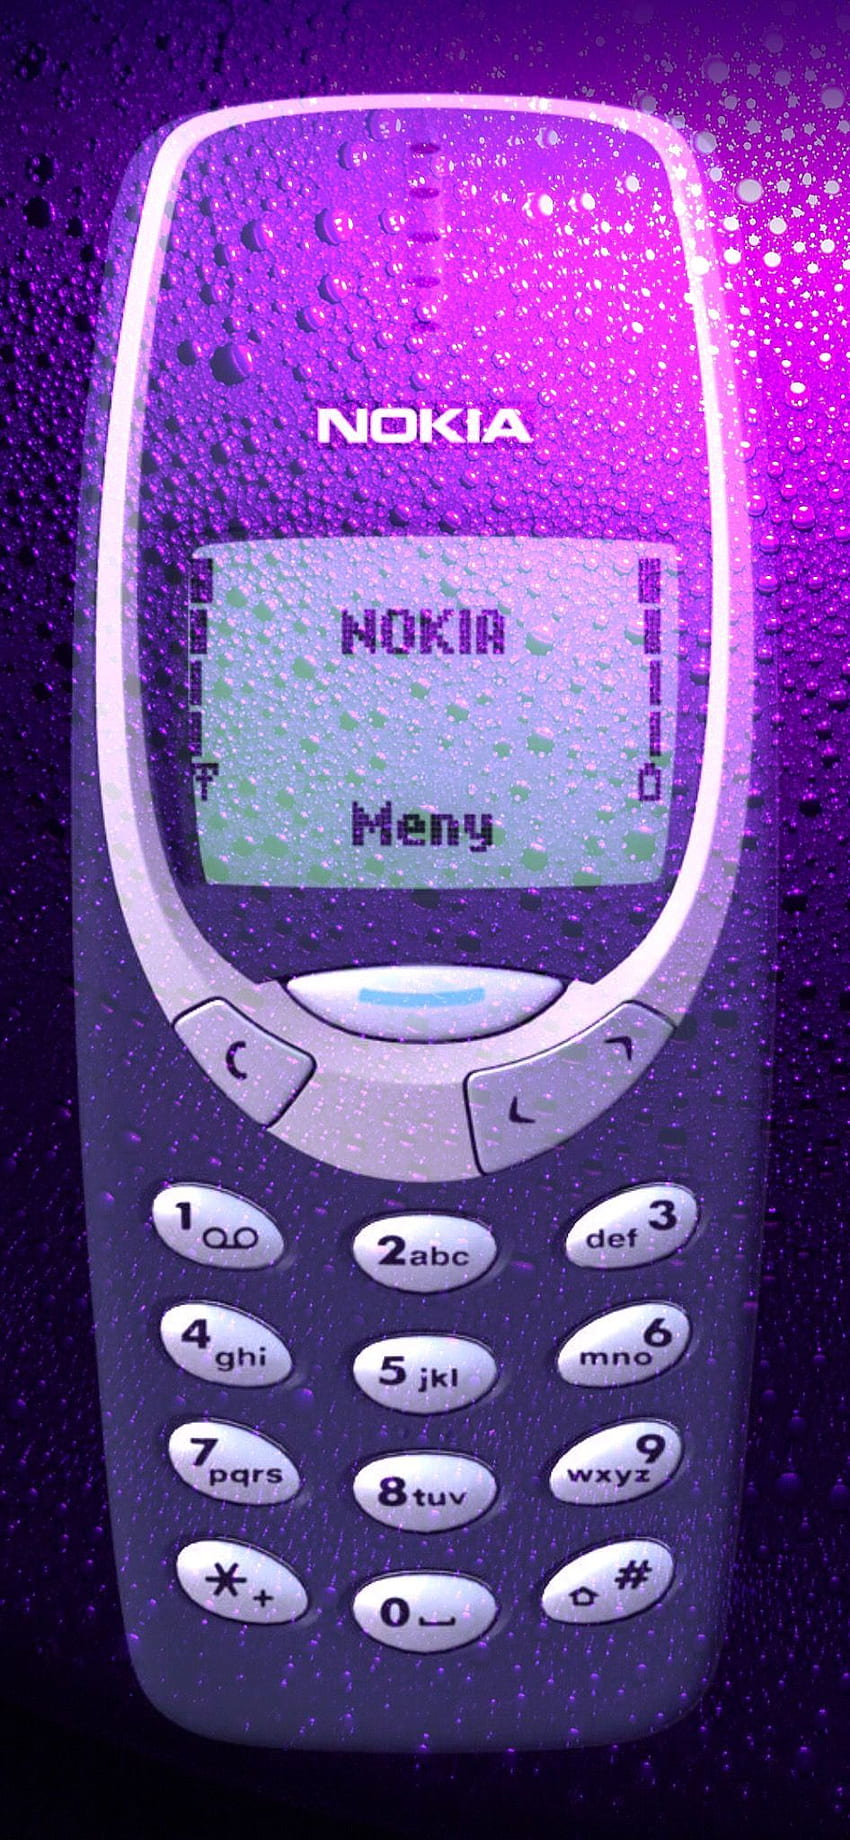 49+] Nokia HD Wallpapers - WallpaperSafari